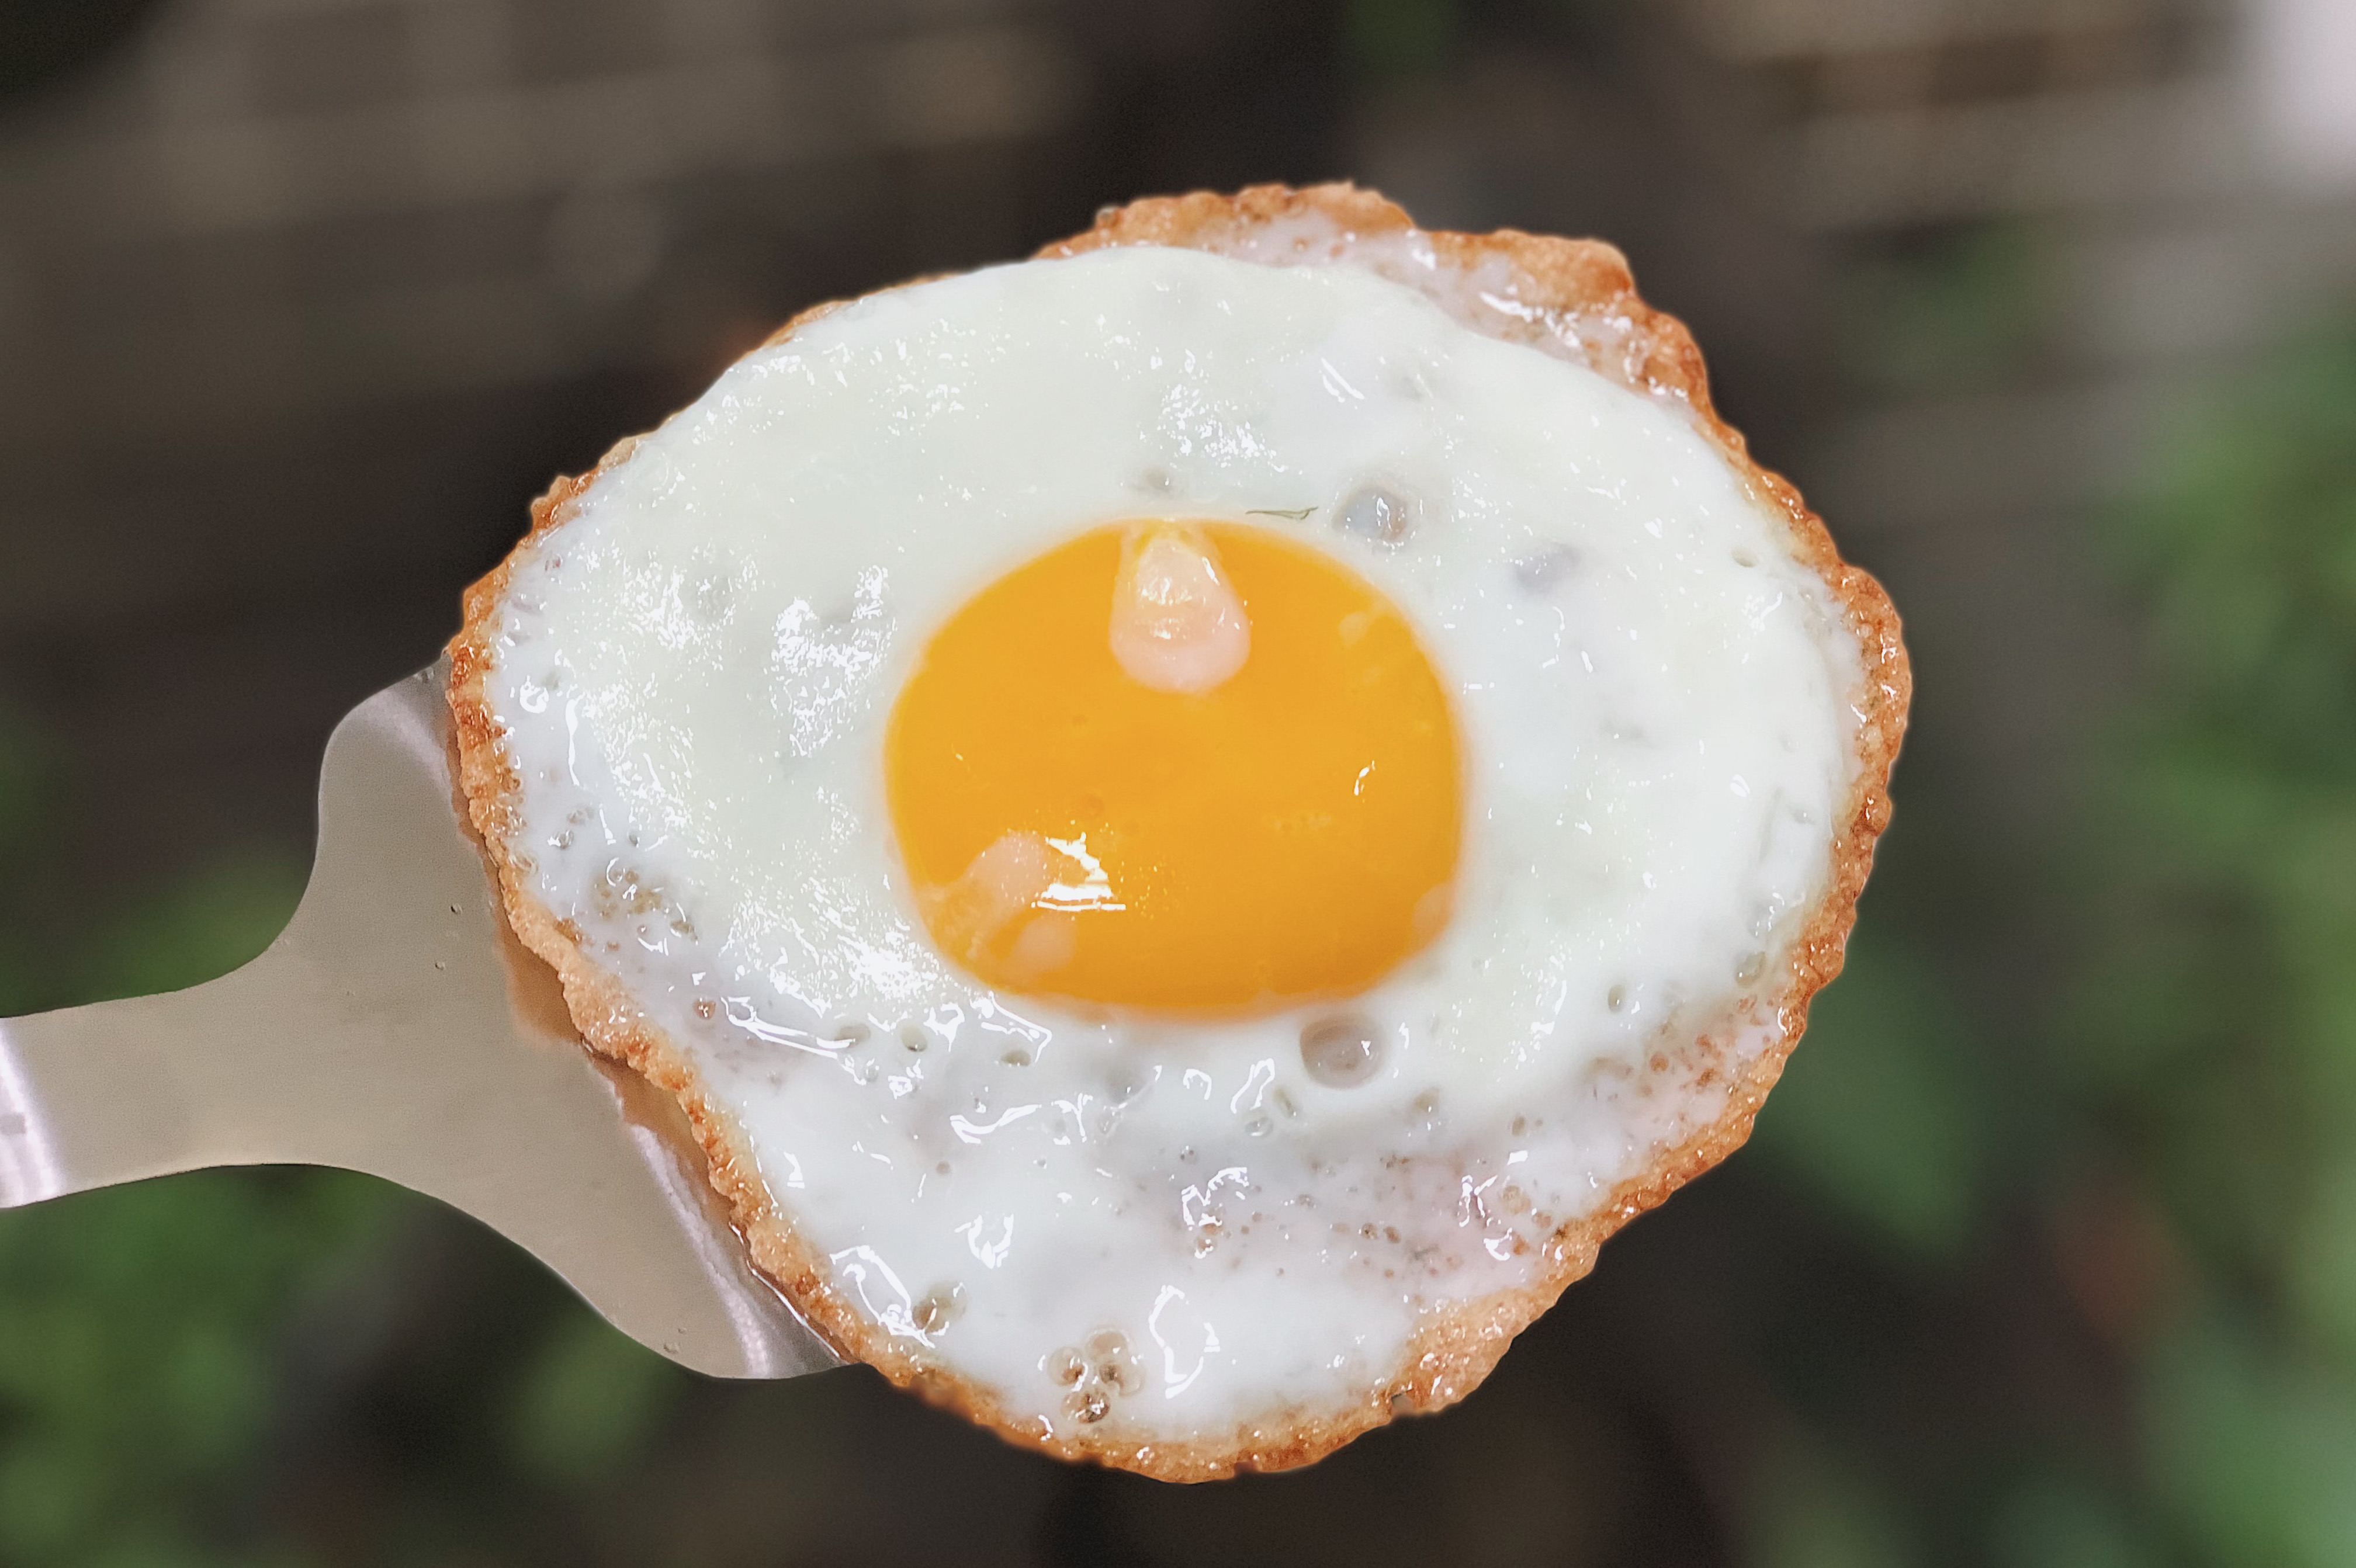 如何煎一顆女生覺得可愛的太陽蛋 - 美食板 | Dcard